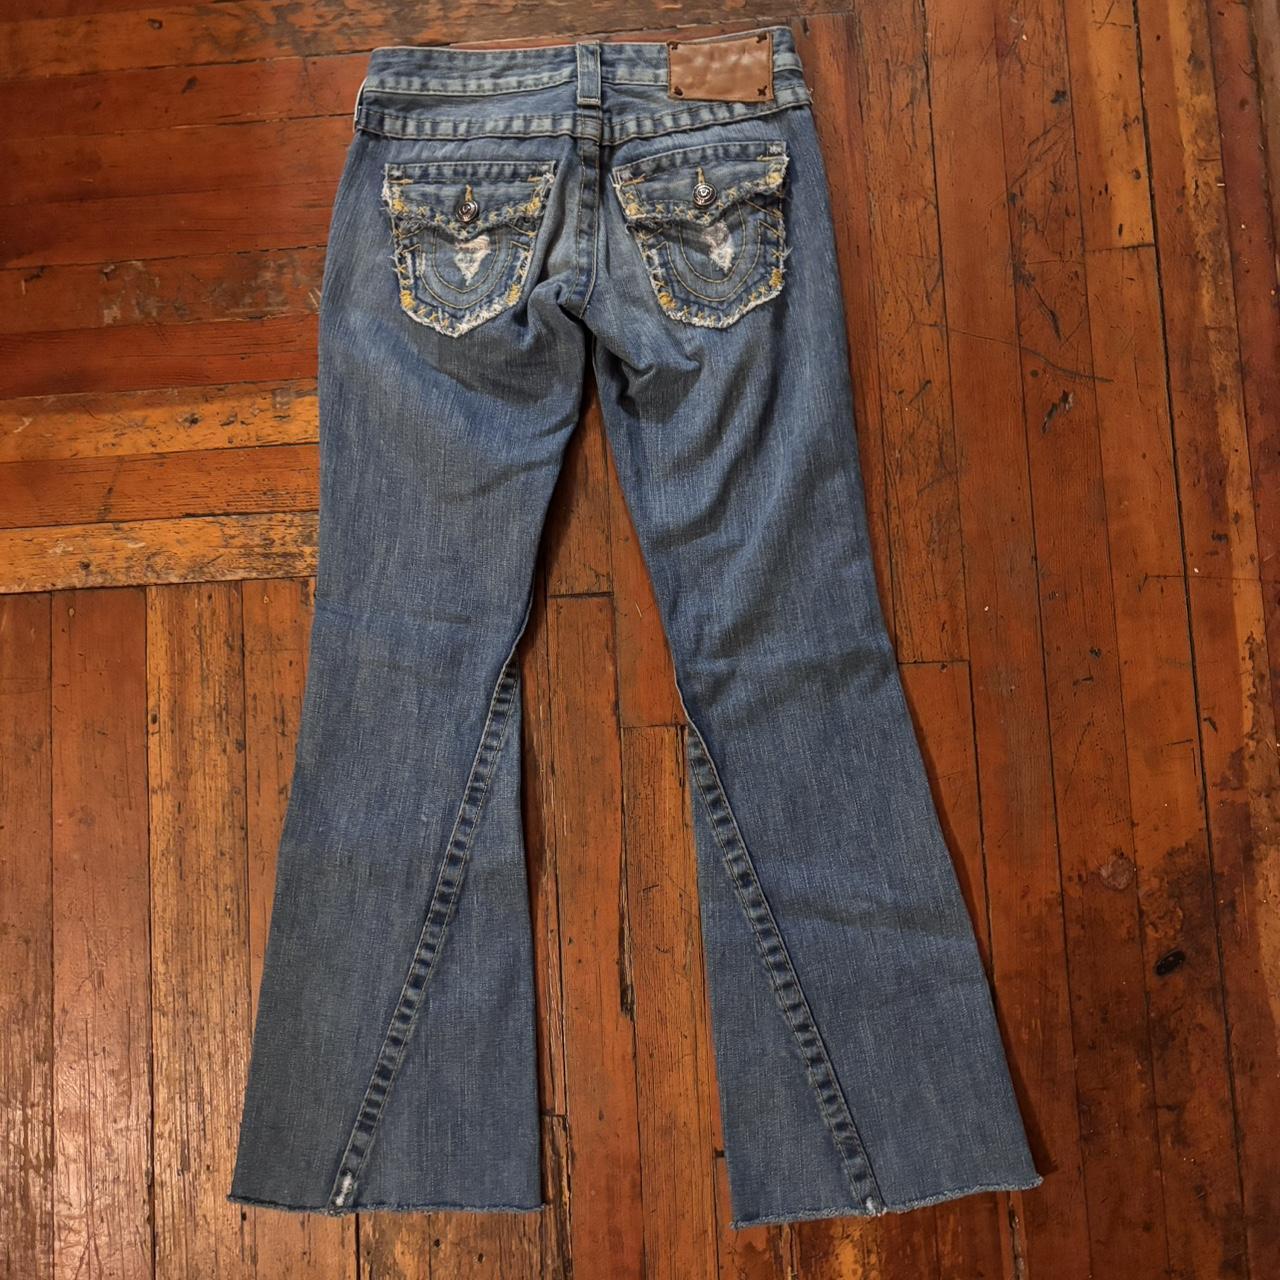 True religion bell bottom blue jeans size 26 in... - Depop